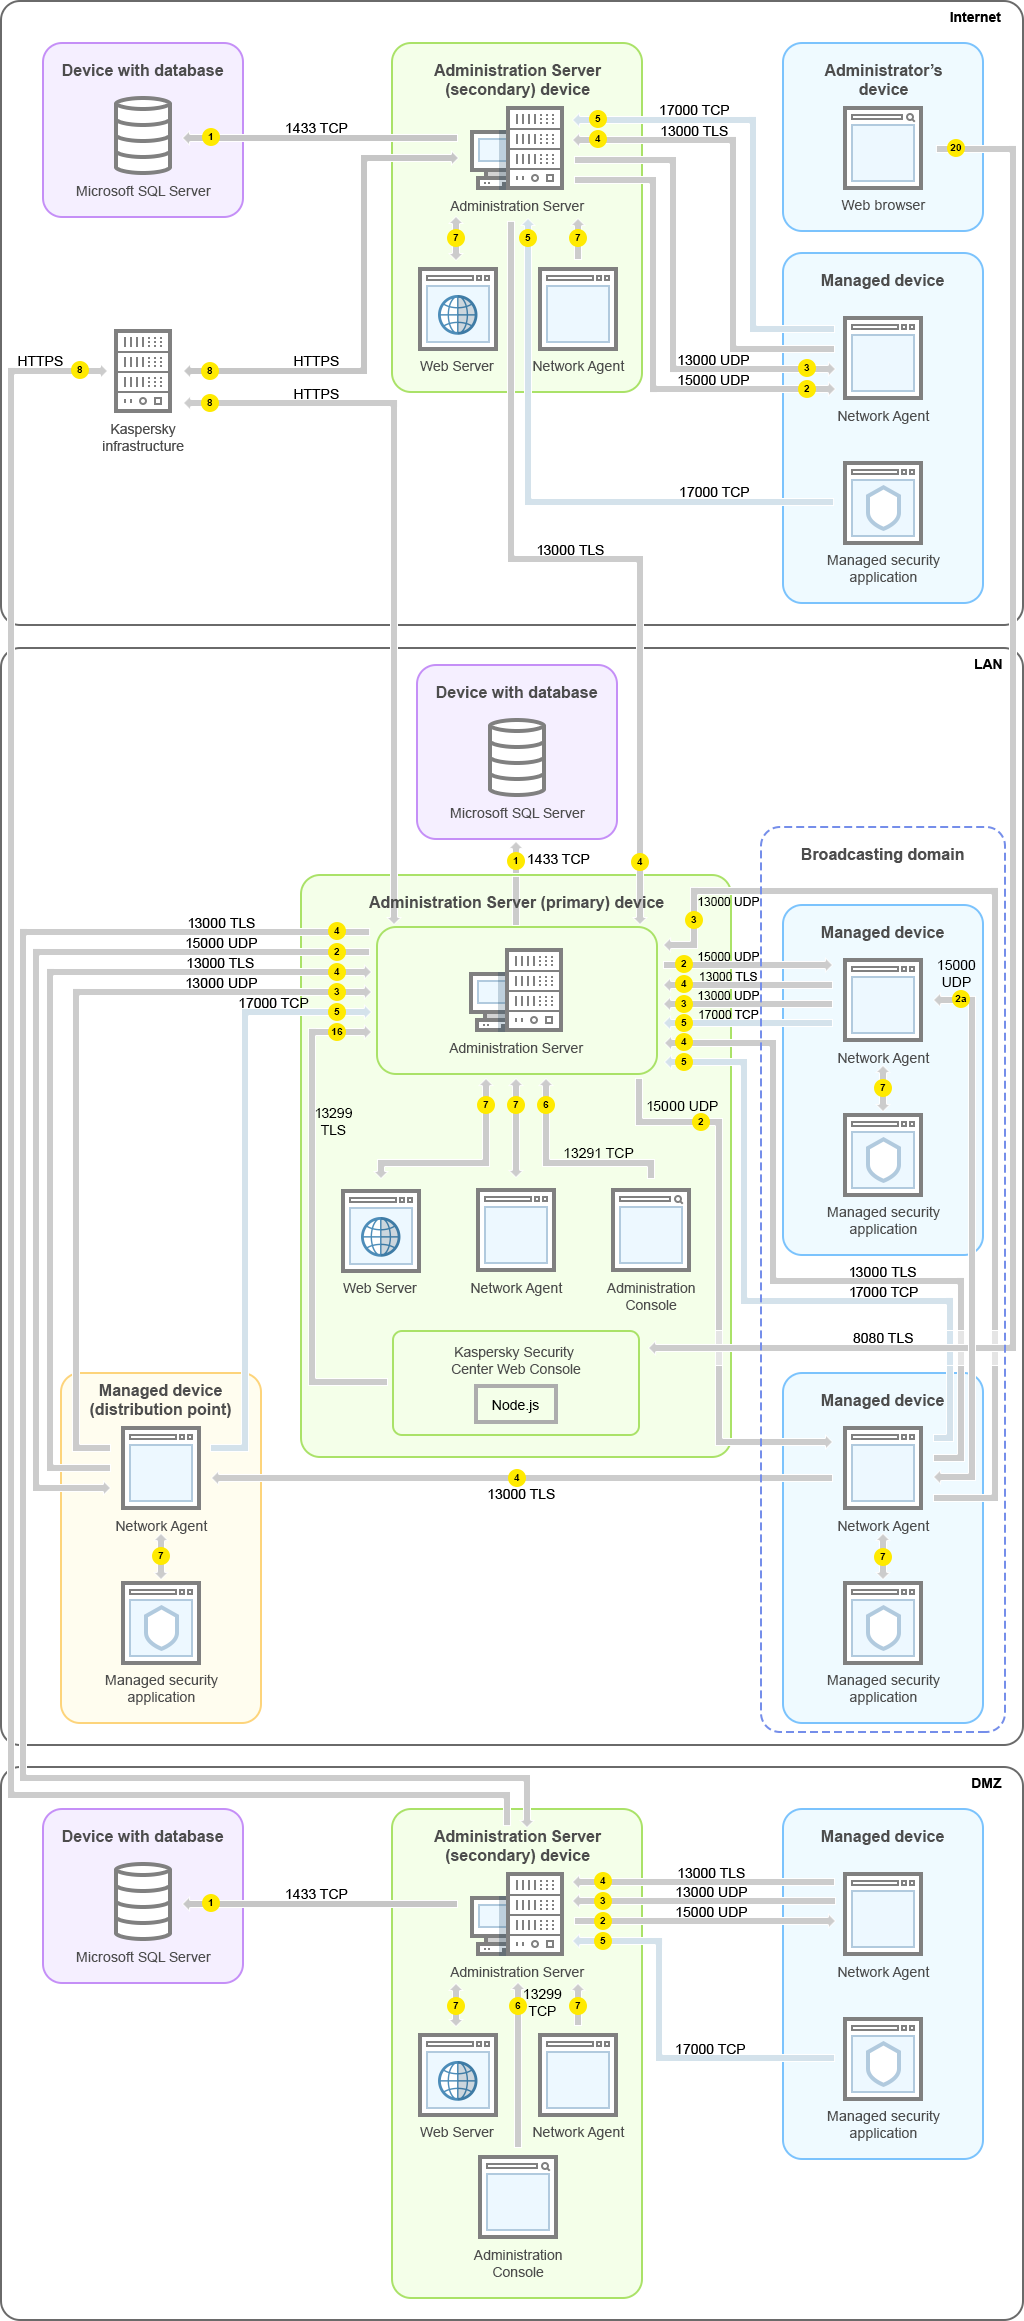 Главный Сервер администрирования и его управляемые устройства находятся в локальной сети, подчиненный Сервер администрирования и его управляемые устройства находятся в демилитаризованной зоне, еще один подчиненный Сервер администрирования, его управляемые устройства и устройство администратора находятся в интернете.